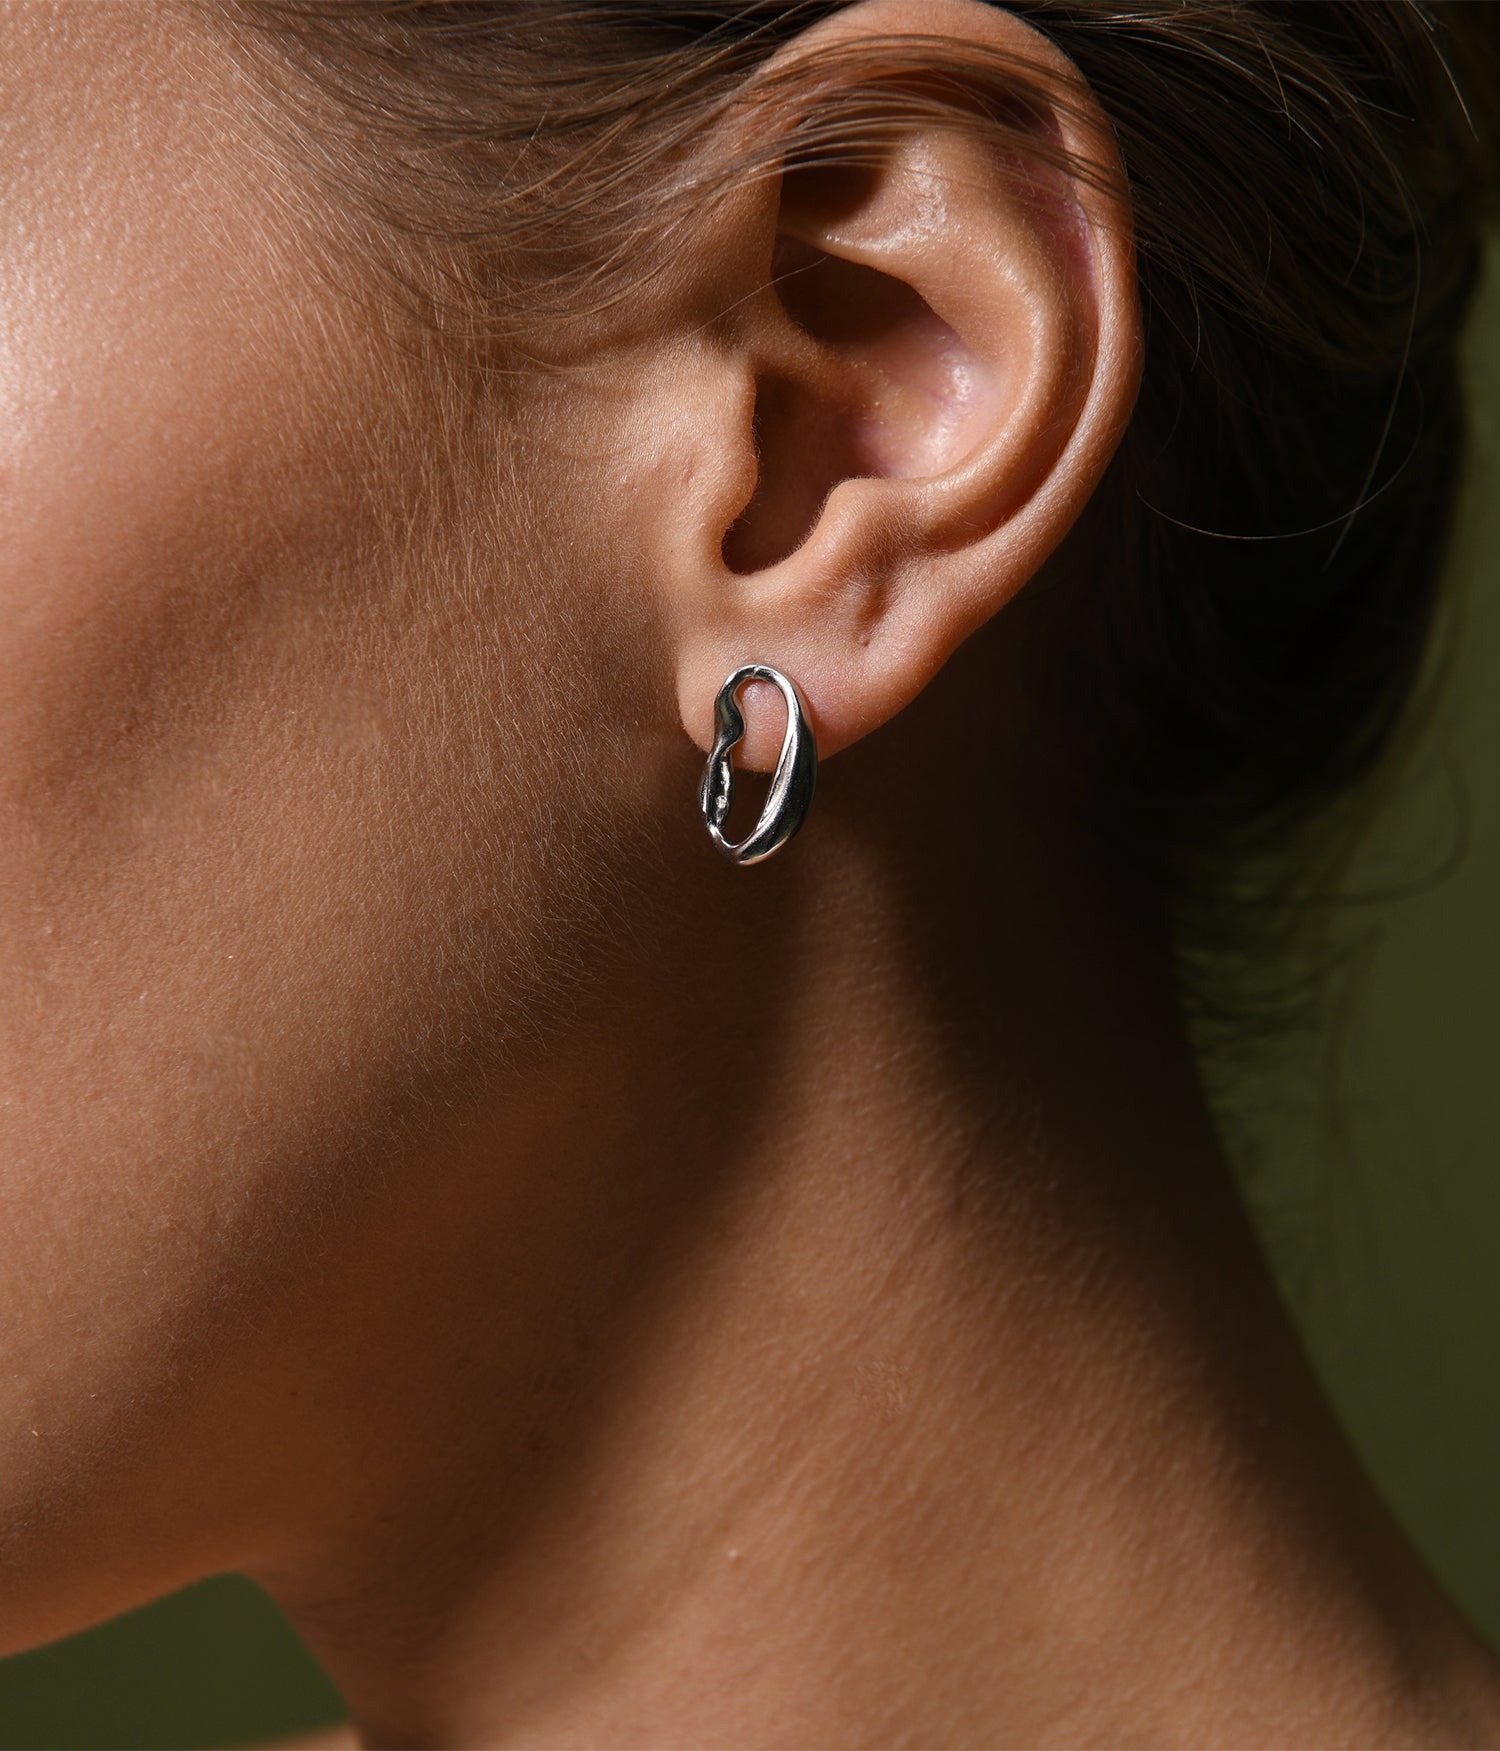 A sterling silver, oval drop hoop earring.